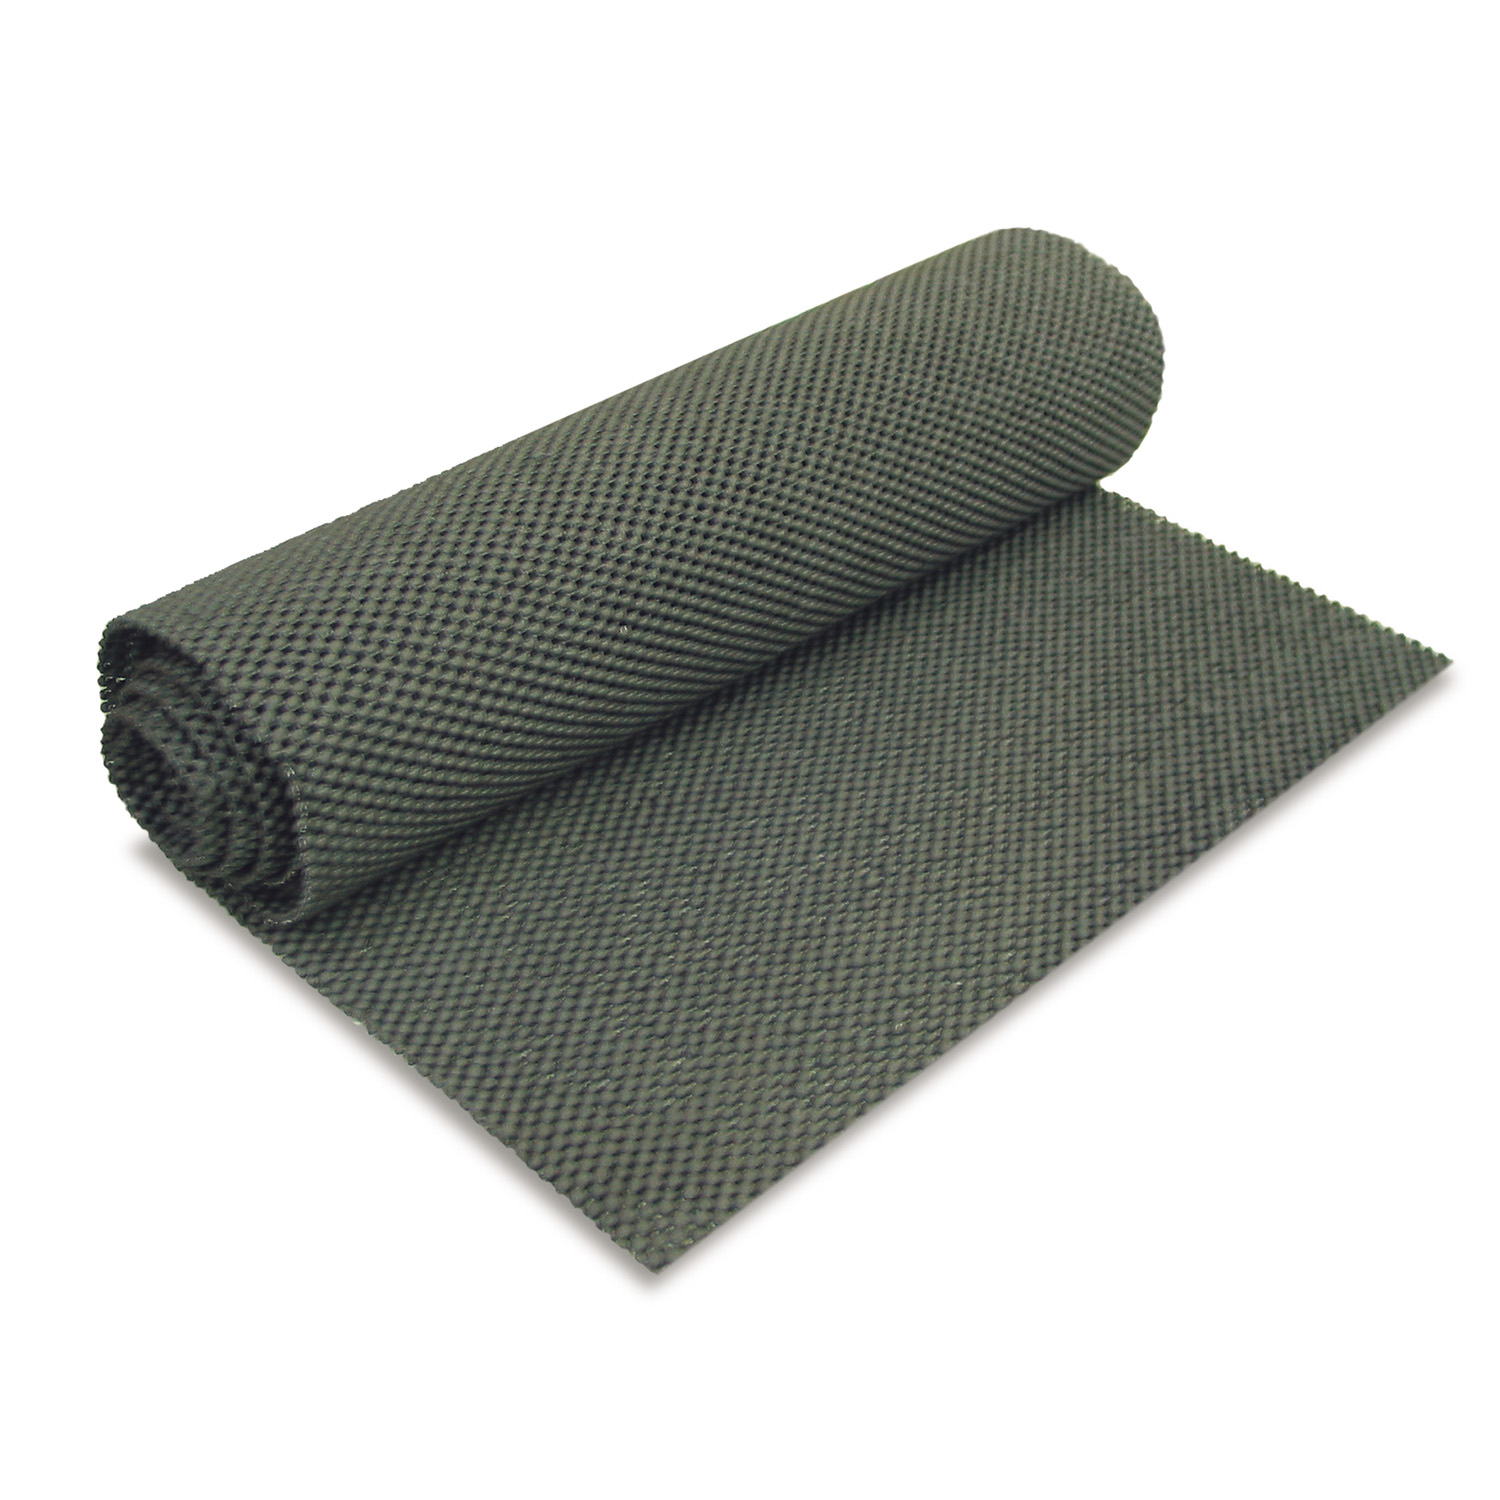 Anti slip matting, 2 x 1.5m roll